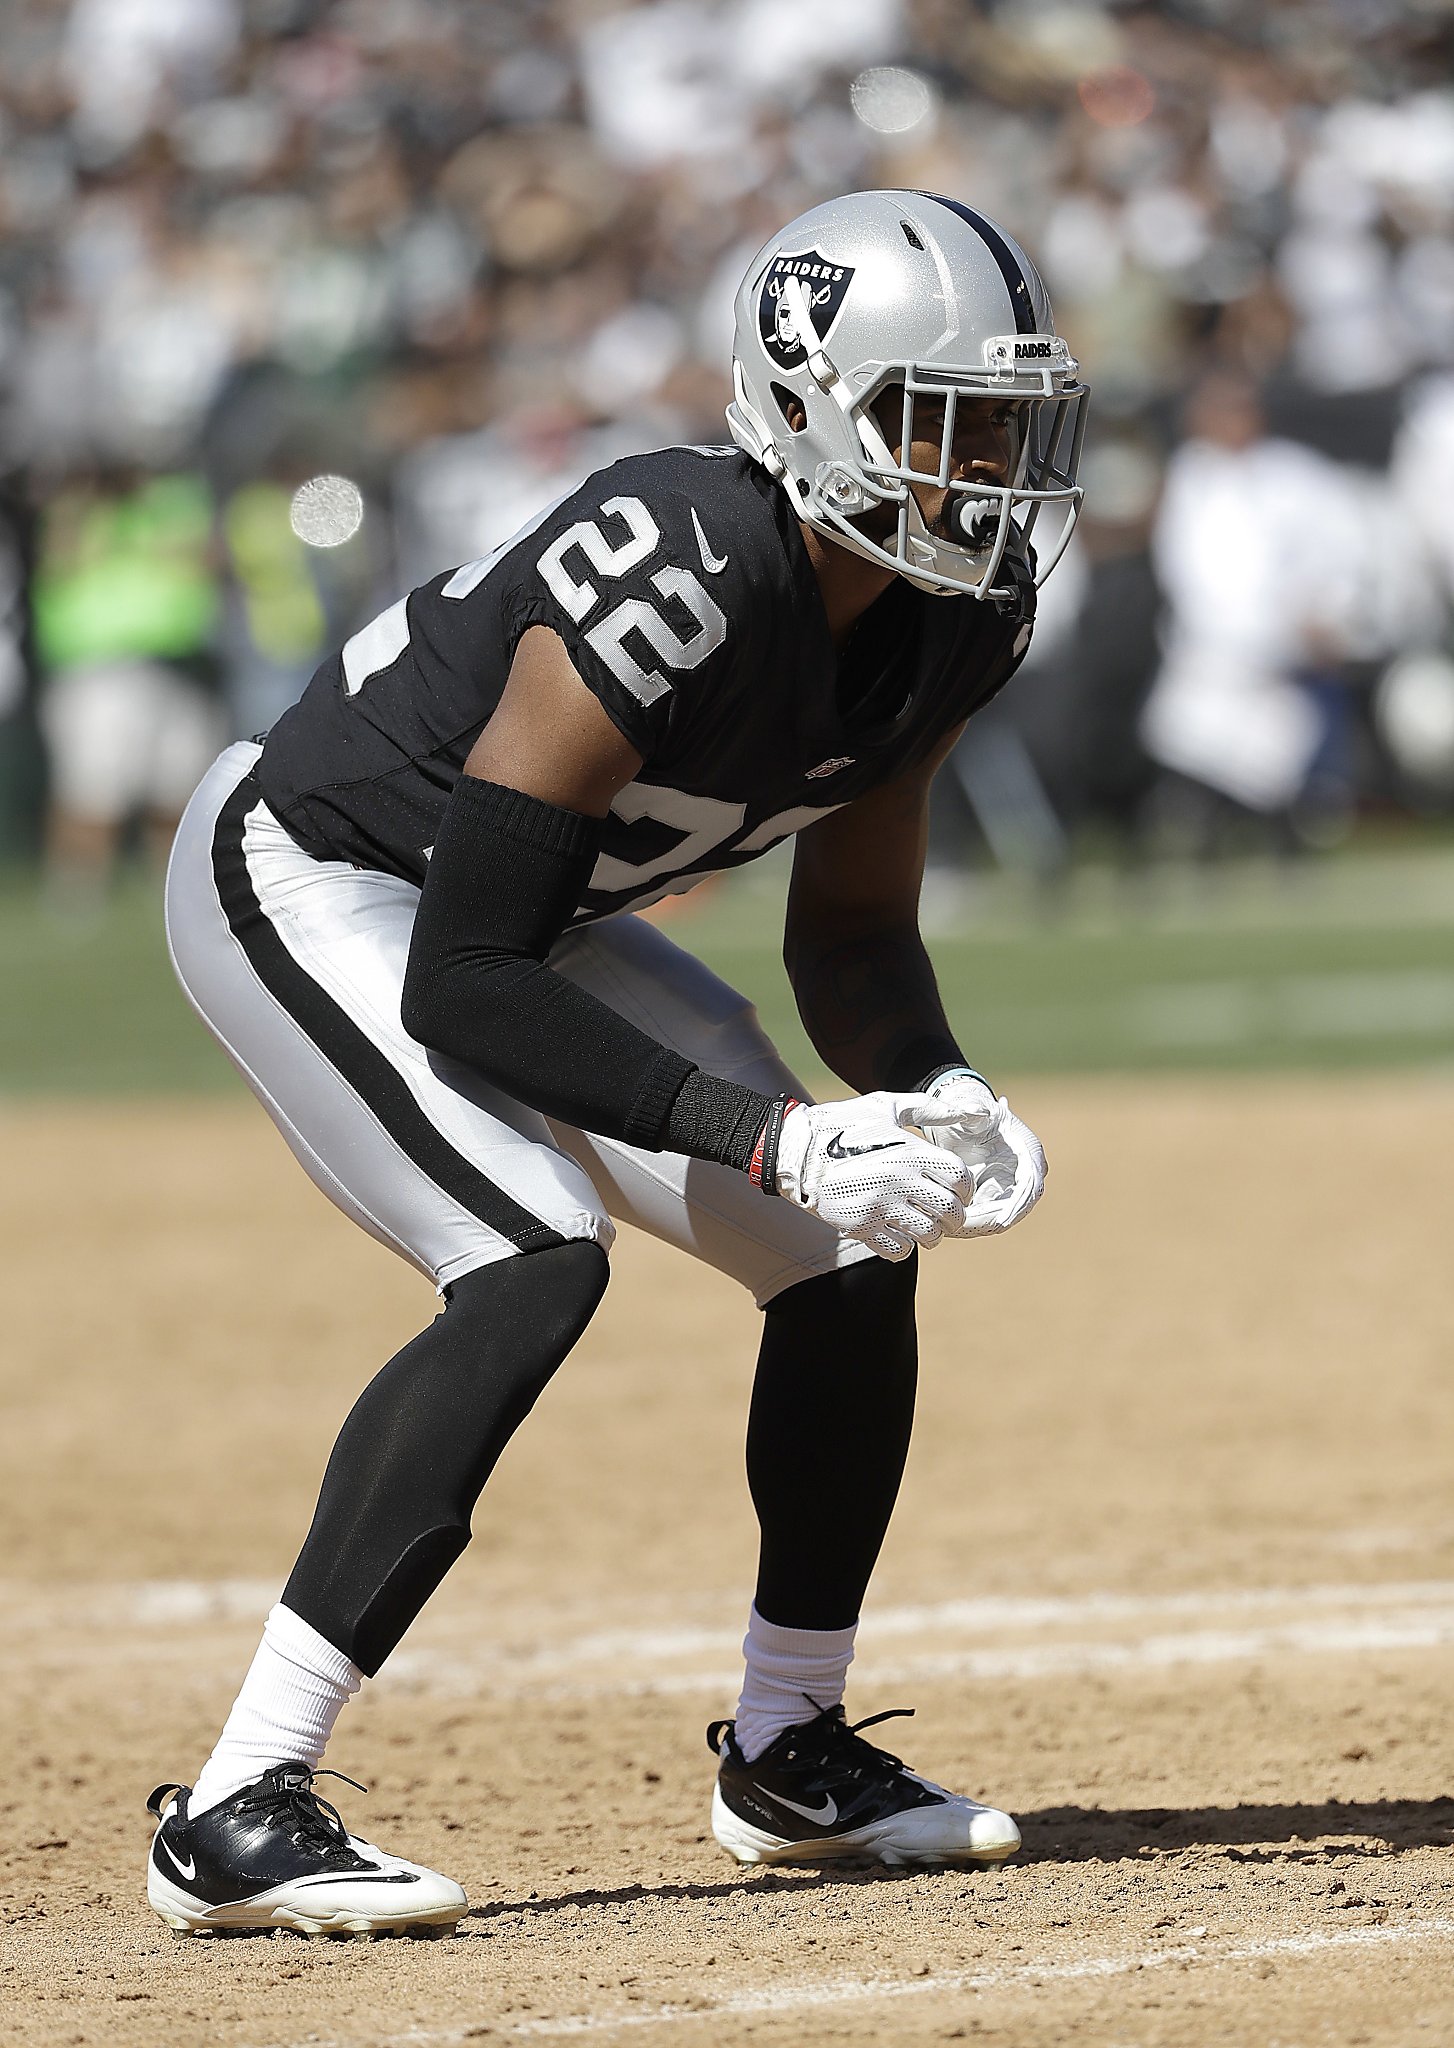 Raiders’ Gareon Conley handles himself well in NFL debut - SFGate